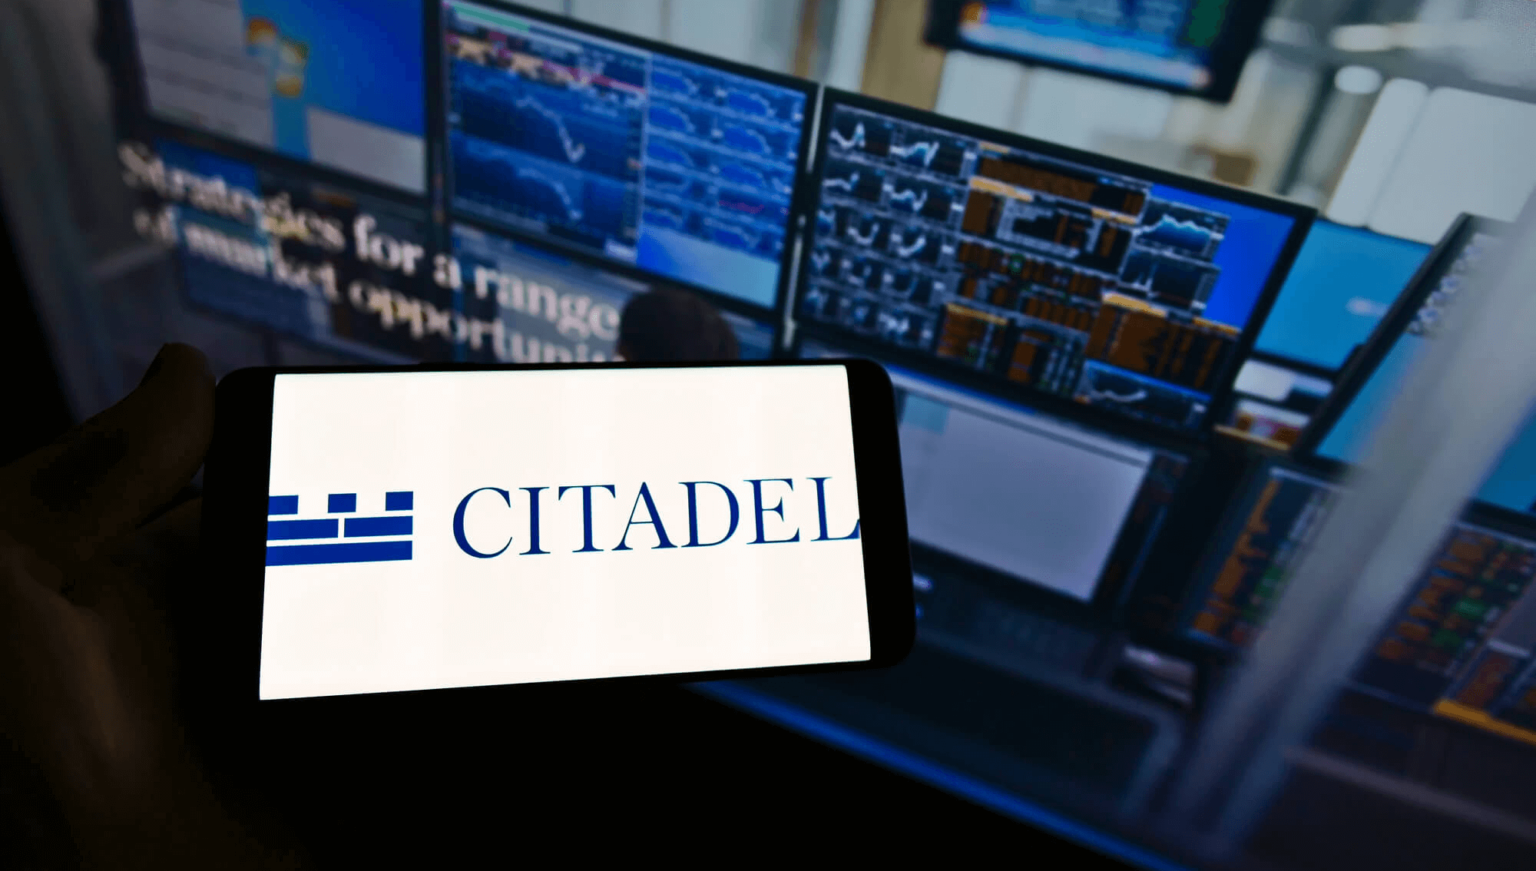 Citadel Securities taucht in den Krypto-Handel ein